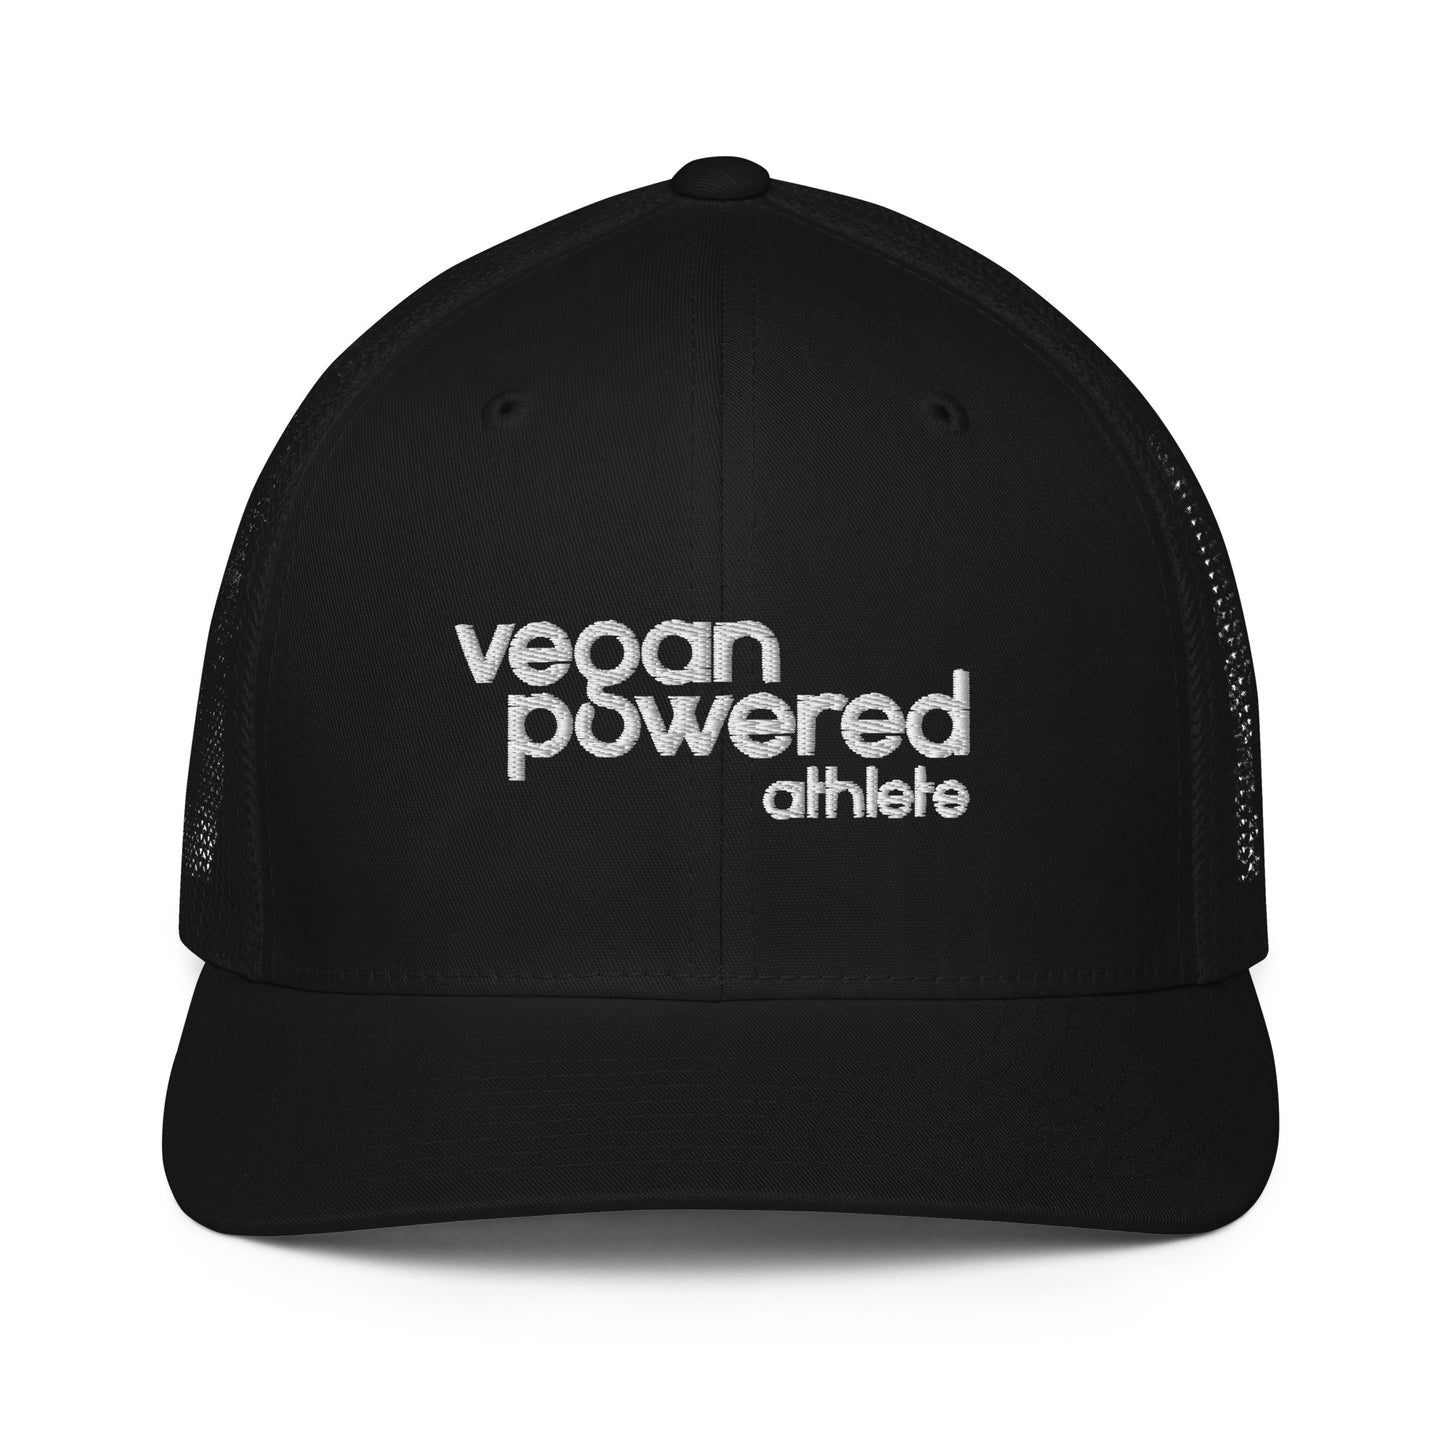 vegan powered athlete Mesh back trucker cap